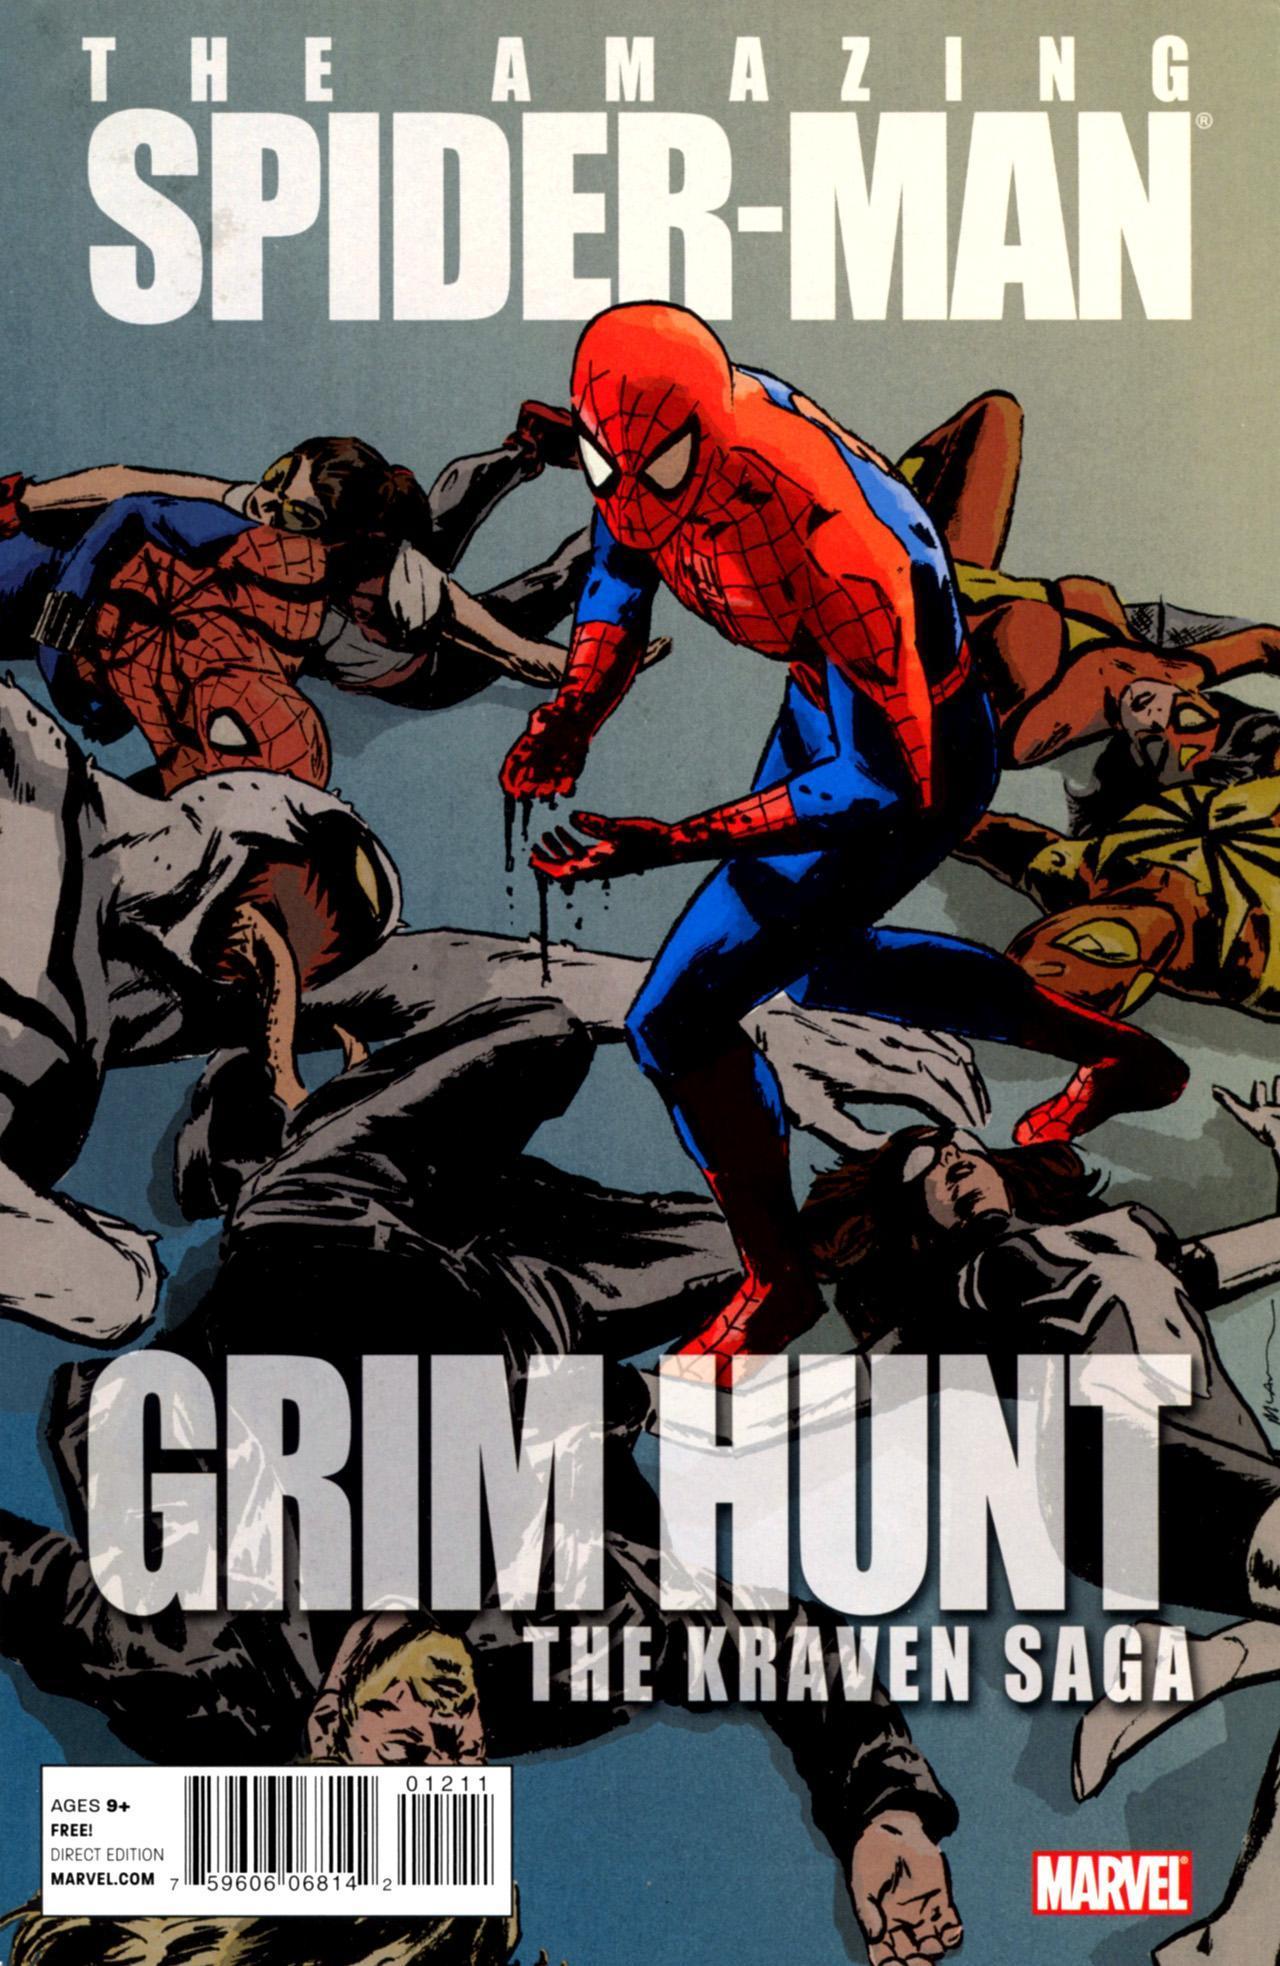 Spider-Man: Grim Hunt - The Kraven Saga Vol. 1 #1